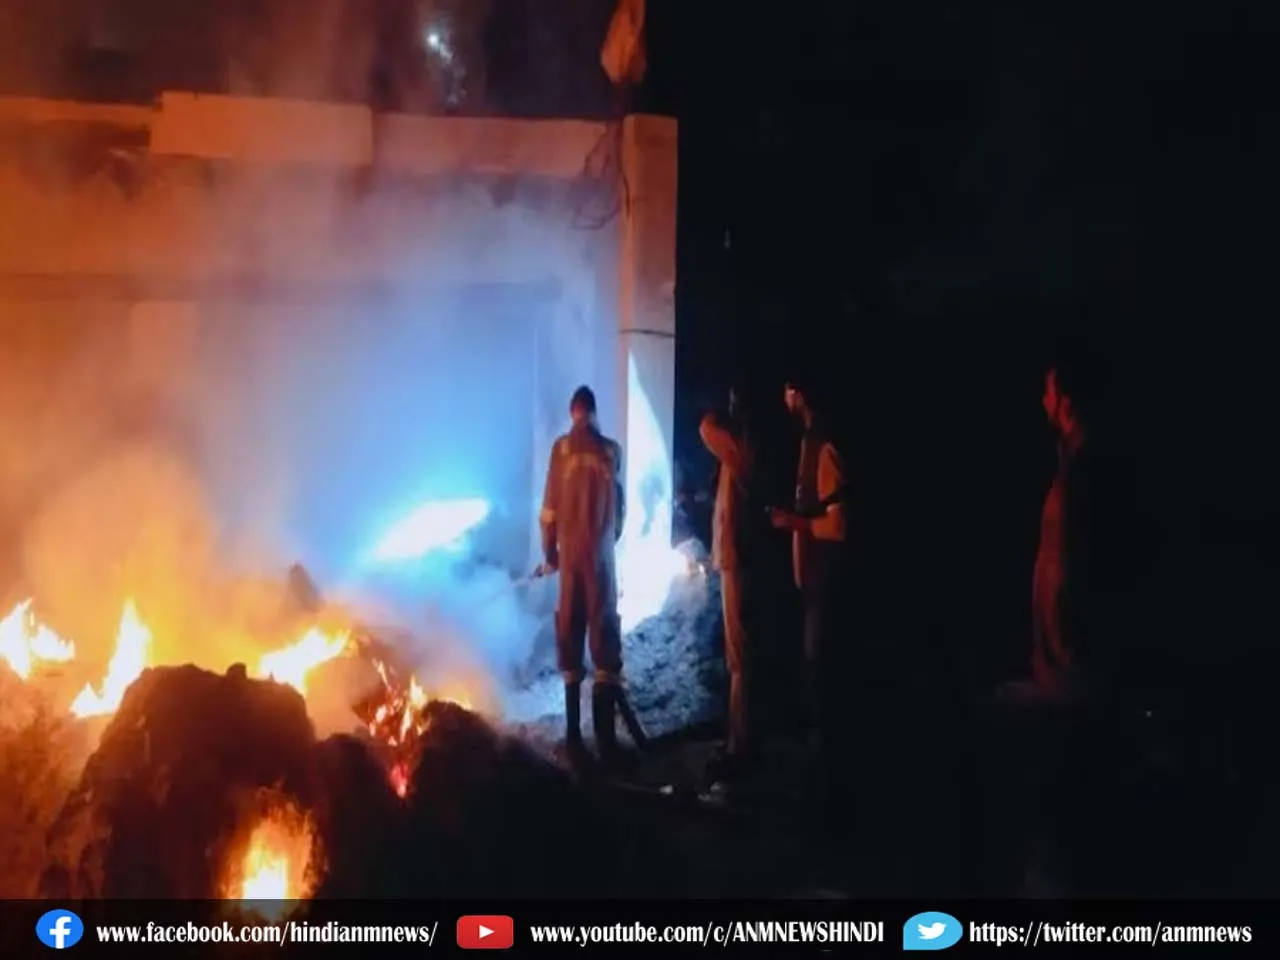 उल्टाडांगा में लगी भीषण आग, gutted warehouse